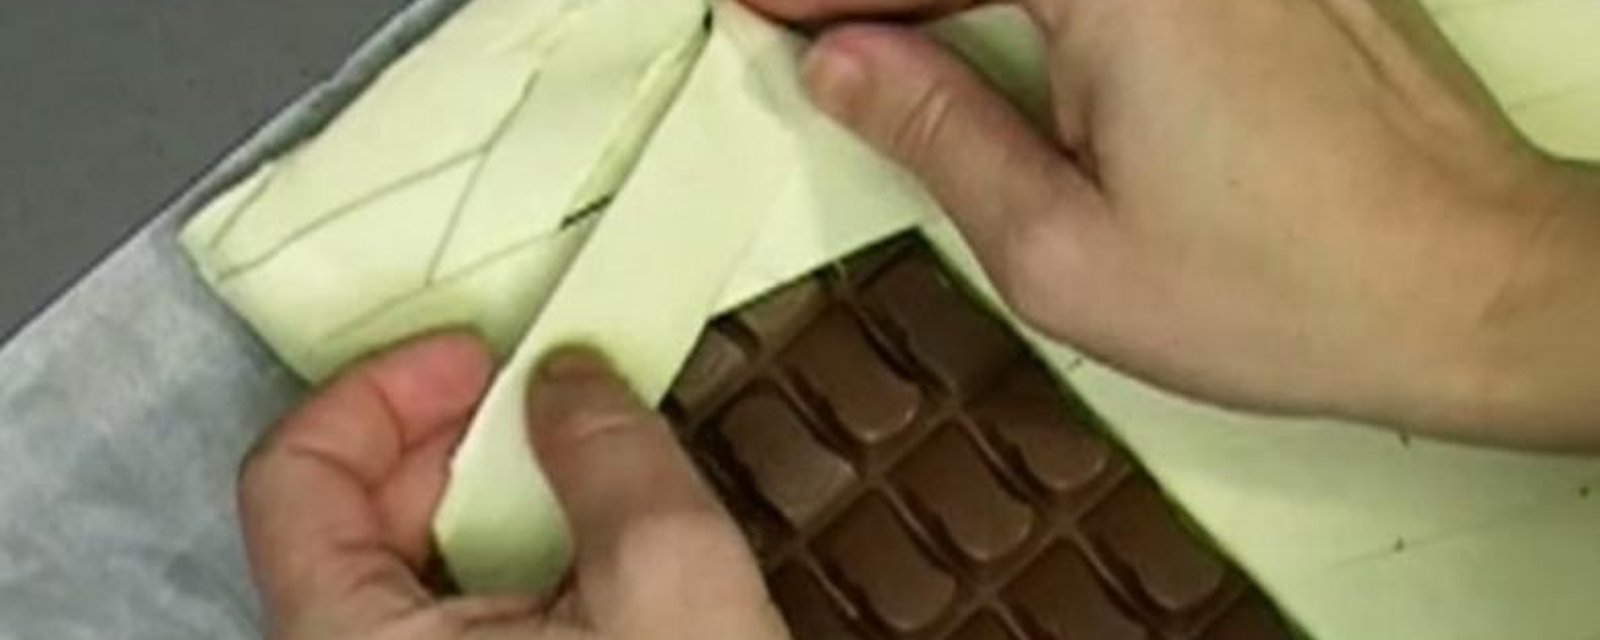 En plaçant du chocolat sur une pâte feuilletée, vous pourrez vous aussi réaliser ce dessert! 